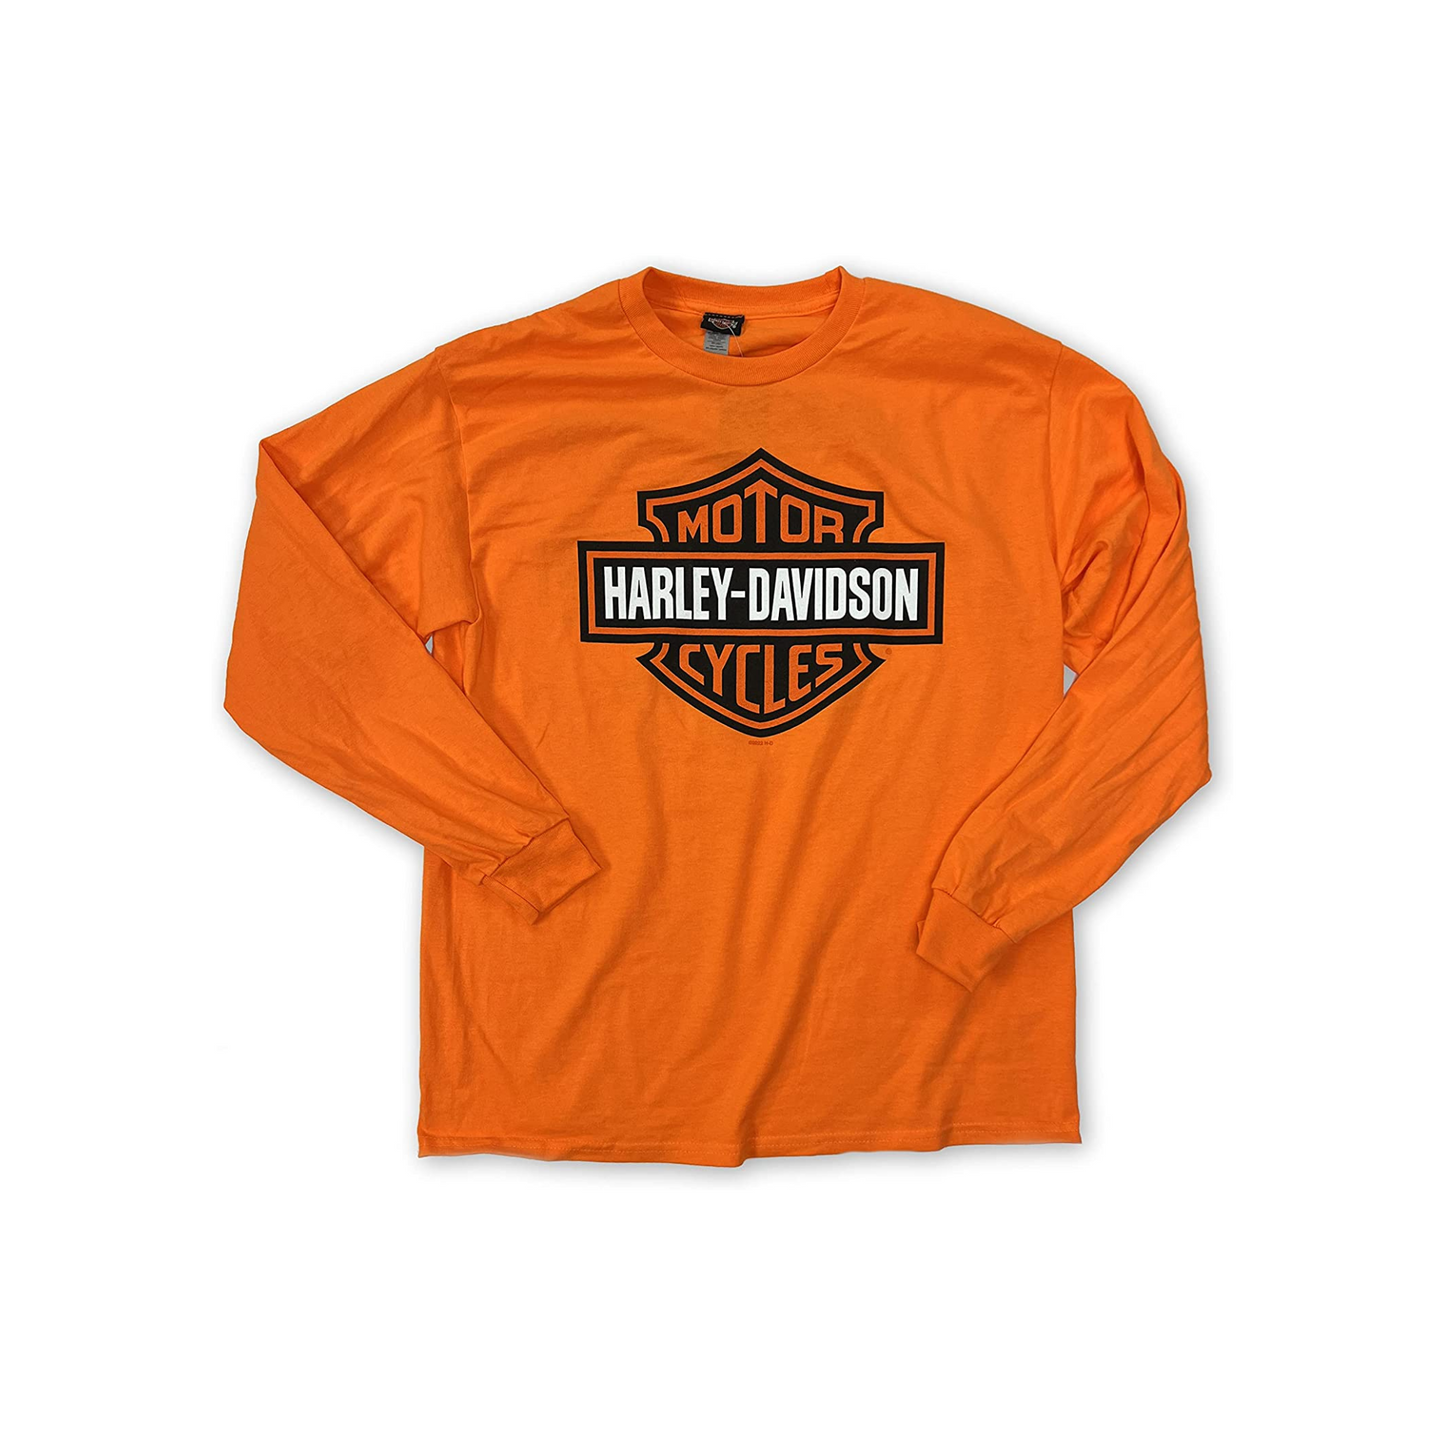 Gasoline Alley Harley-Davidson® Bar& Shield Long Sleeve Dealer Tee - Safety Orange